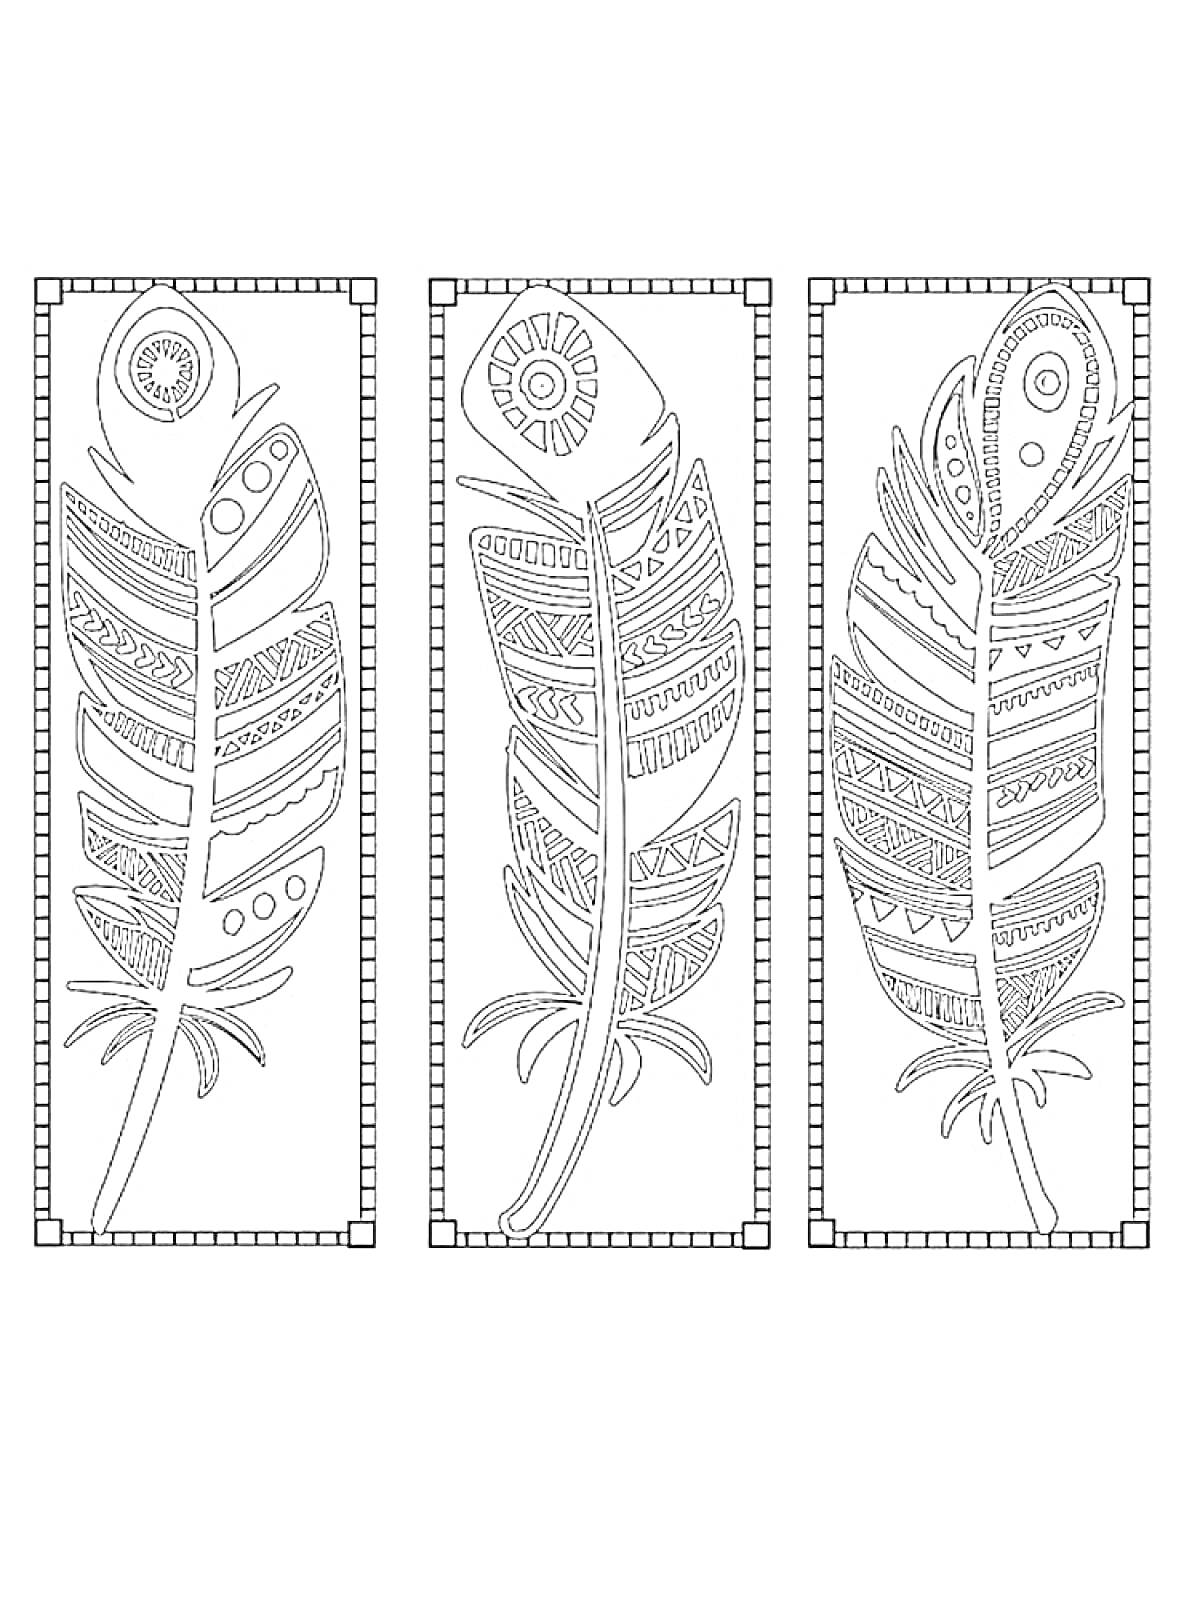 Раскраска Три декоративных пера в прямоугольных рамках с узорными элементами